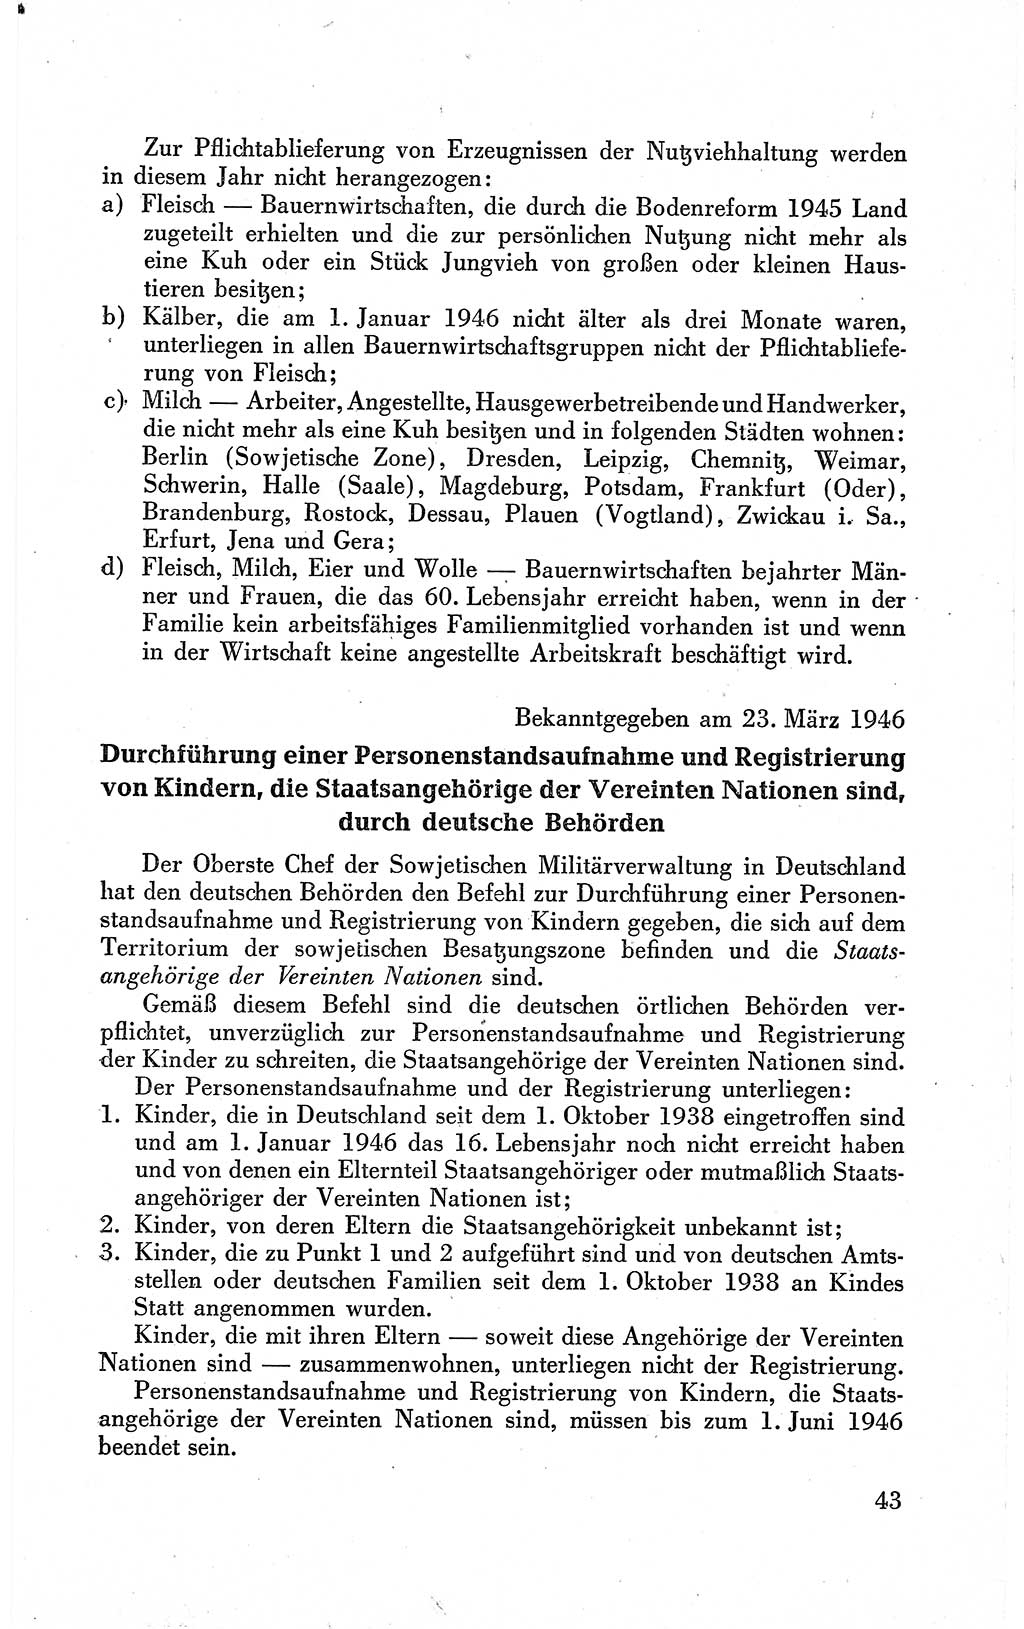 Befehle des Obersten Chefs der Sowjetischen Miltärverwaltung (SMV) in Deutschland - Aus dem Stab der Sowjetischen Militärverwaltung in Deutschland 1946 (Bef. SMV Dtl. 1946, S. 43)